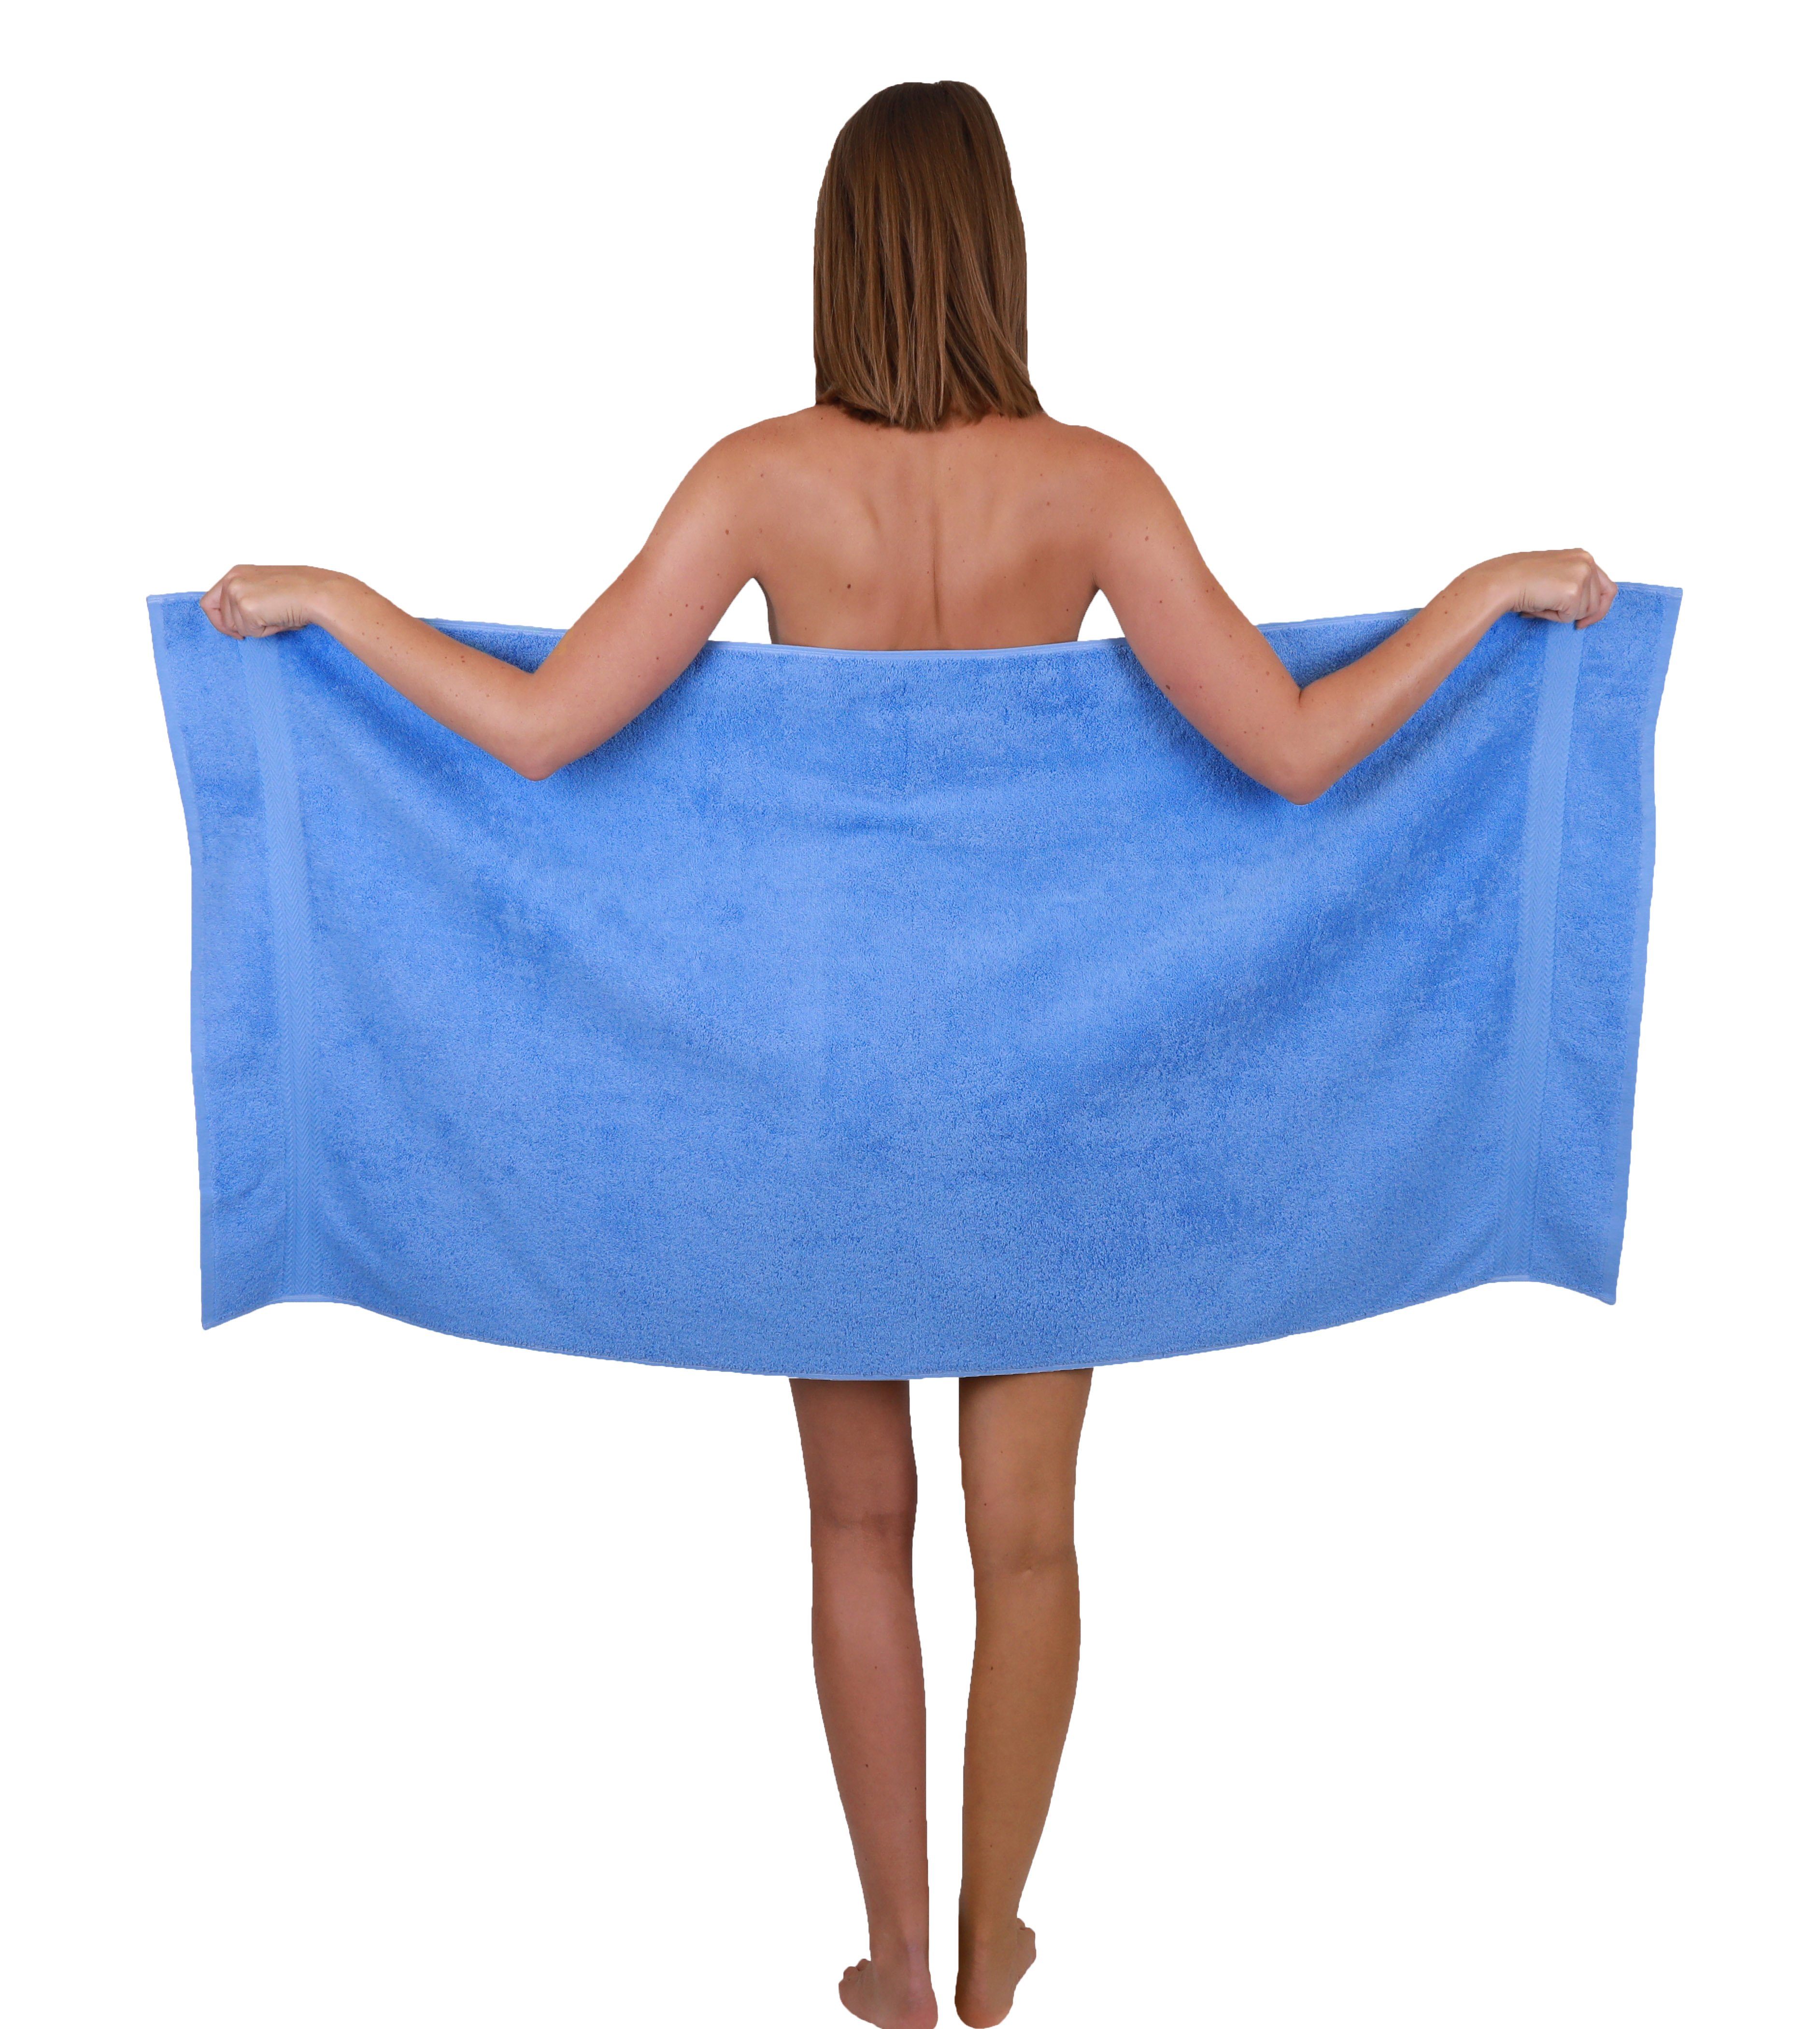 Betz Handtuch Set Farbe 100% Baumwolle 100% Premium Handtuch-Set Baumwolle hellblau, 4 6-TLG. weiß Duschtücher 2 und Handtücher